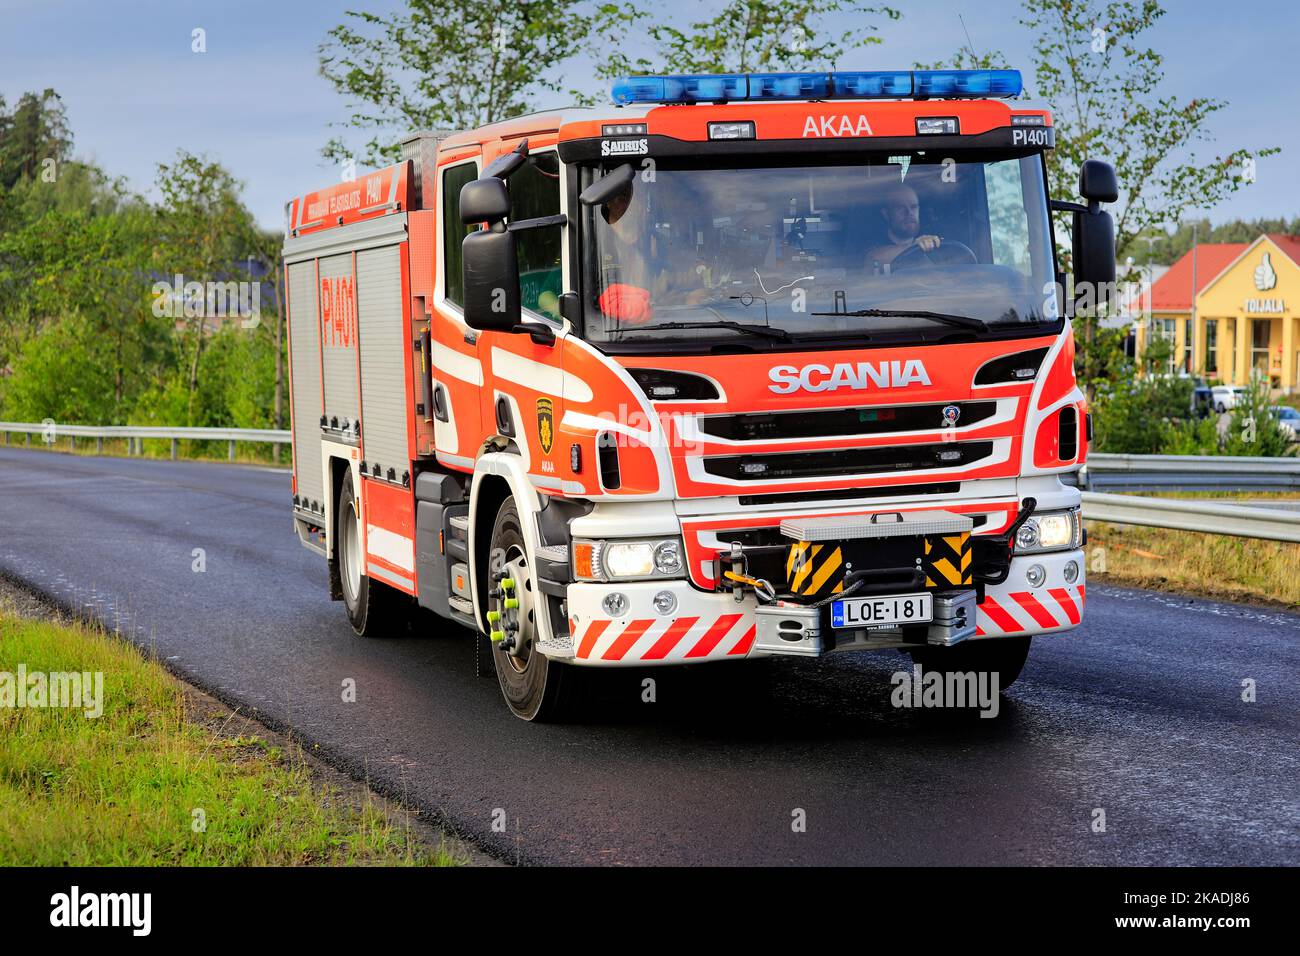 Scania Saurus Fire Engine of Pirkanmaa Rescue Department sur la route par un beau jour d'été. Akaa, Finlande. 12 août 2021. Banque D'Images